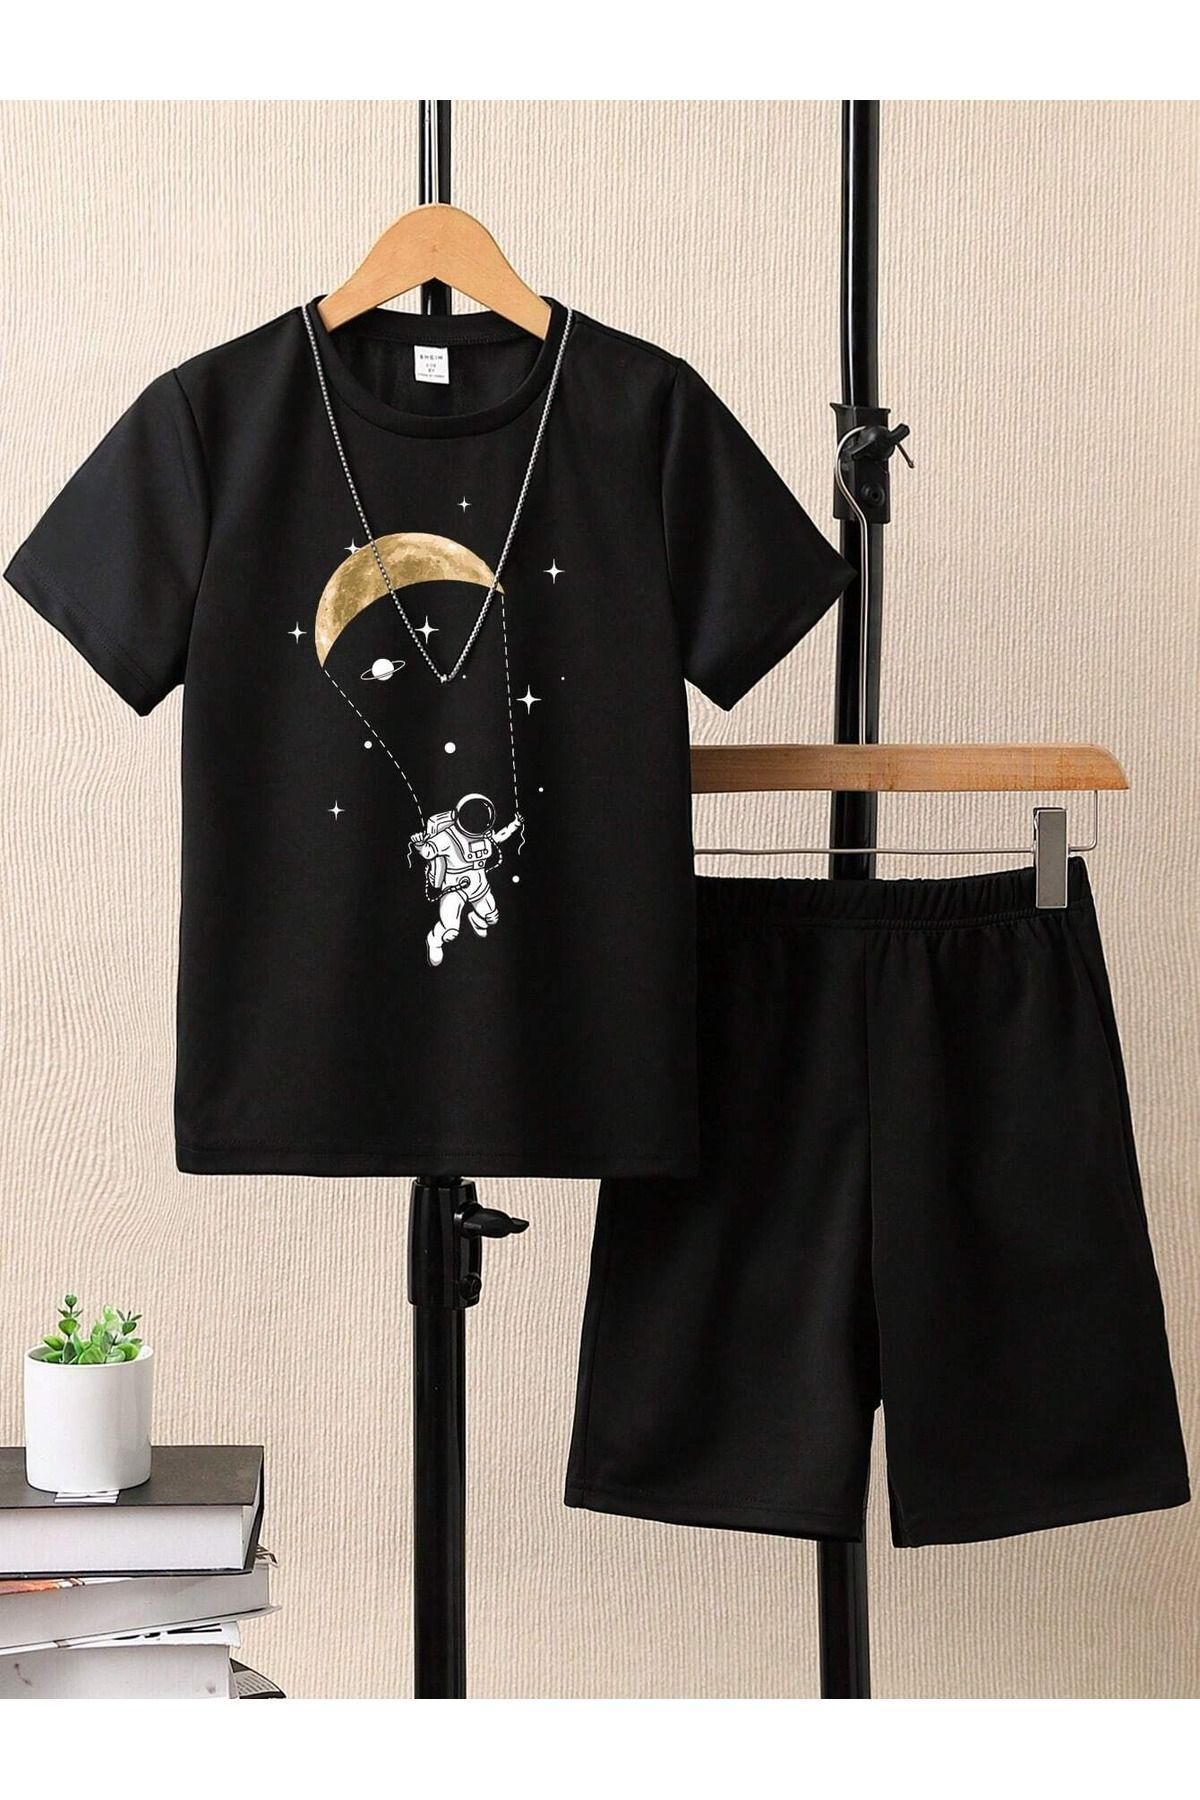 CLAYES Astronot Baskılı Pamuklu Siyah Çocuk Şort T-shirt Takım - Kız Erkek Çocuk Yazlık Bisiklet Yaka